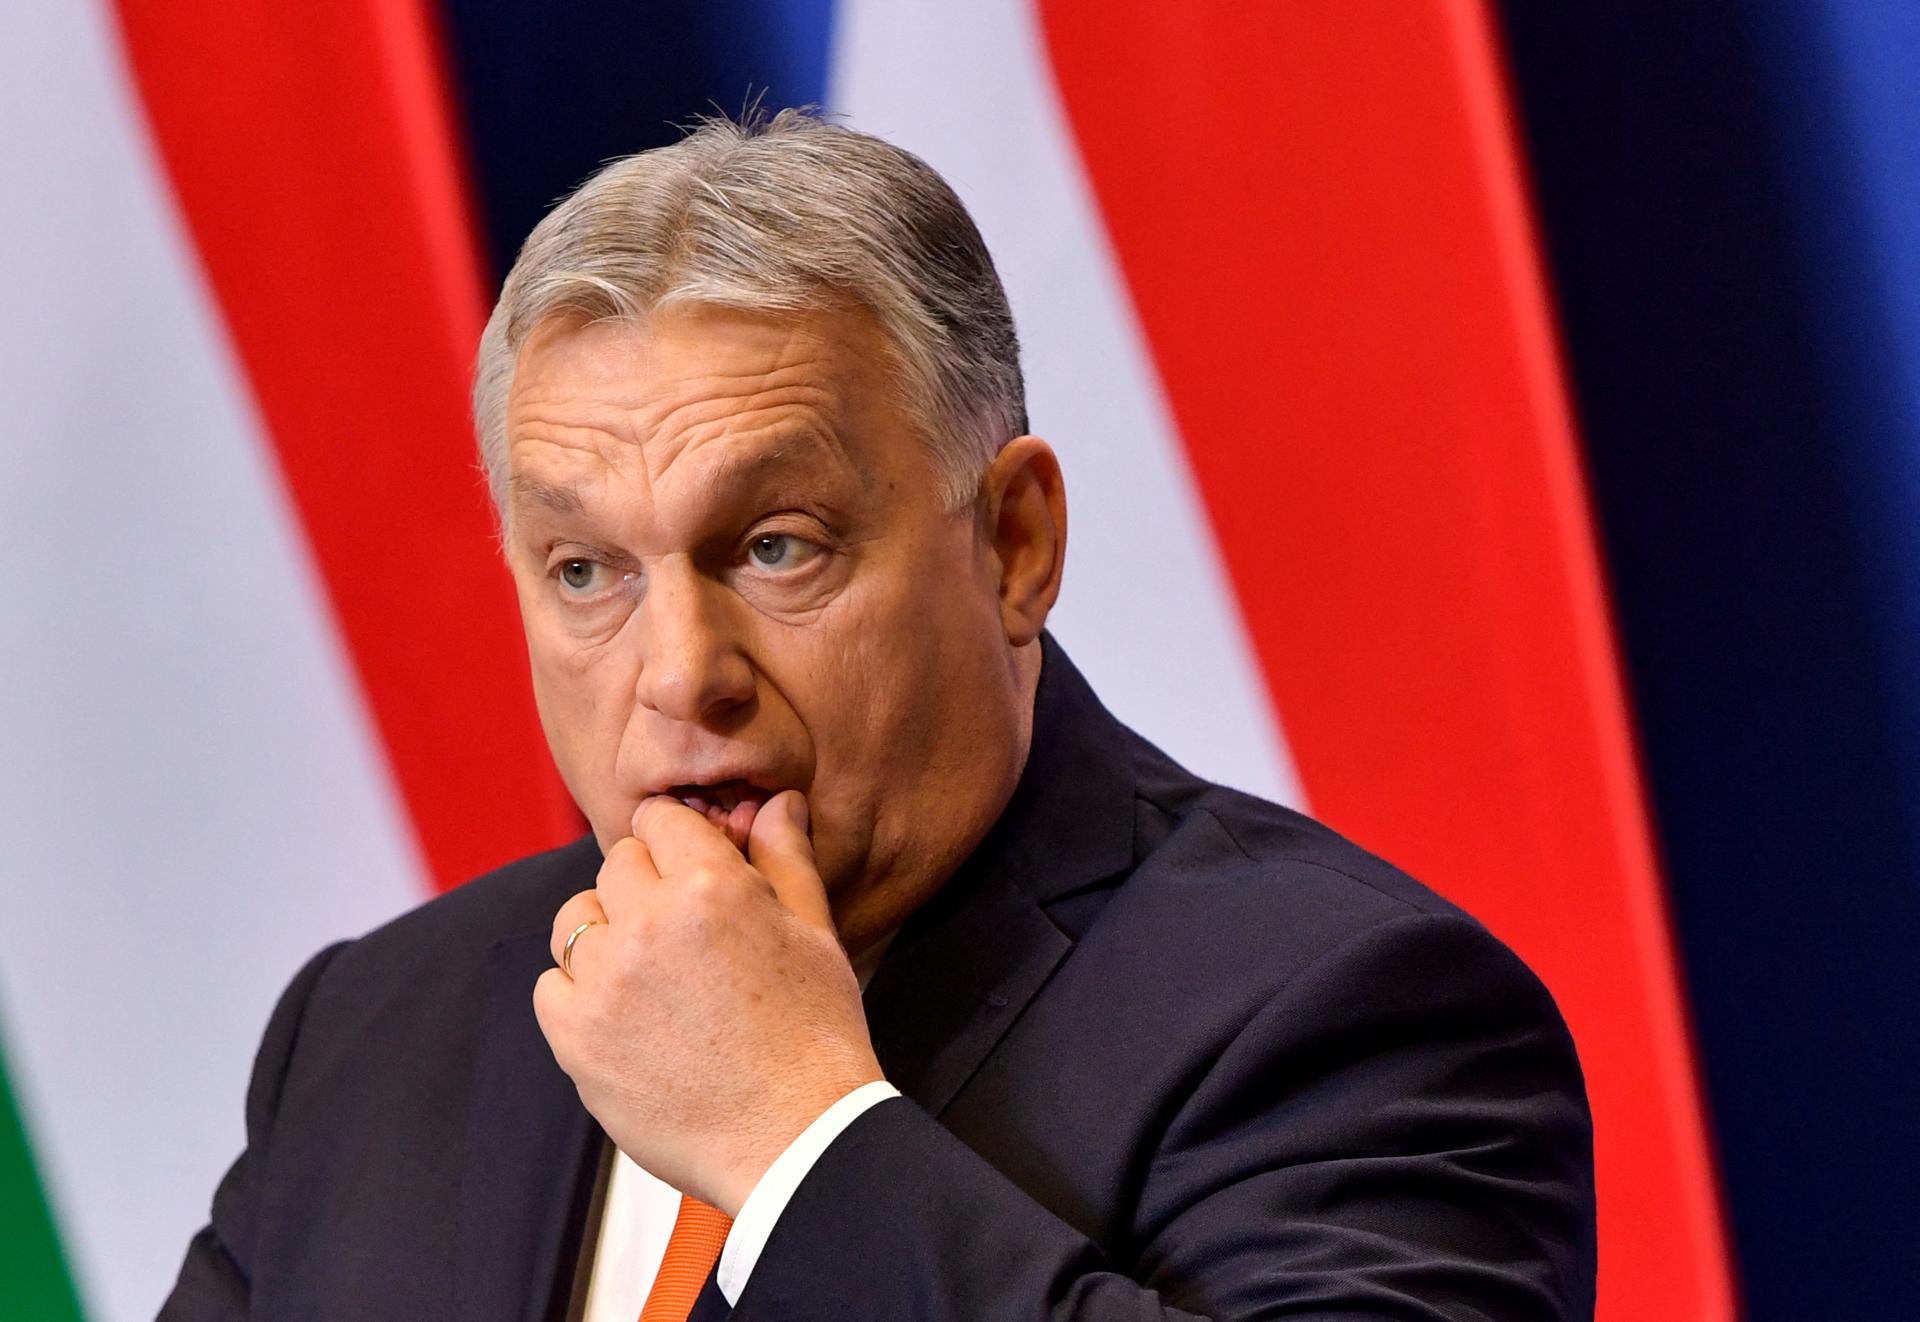 Maďari majú na sankcie iný názor ako Orbán. Odmieta ich iba 32 percent z nich, ukazuje prieskum